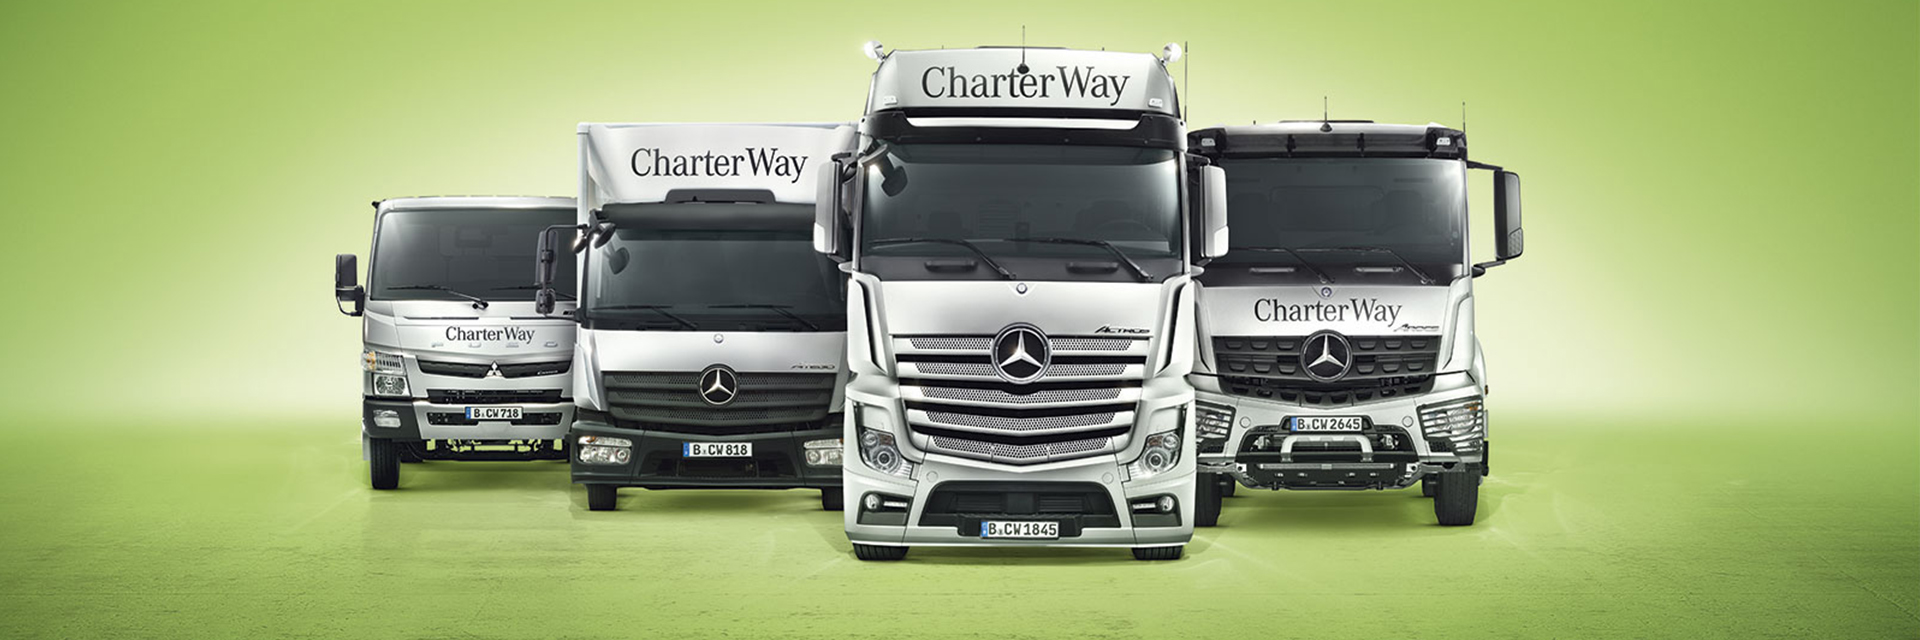 Mercedes-Benz-Charter-Way-Vermietung-mieten-LKW-Nutzfahrzeug